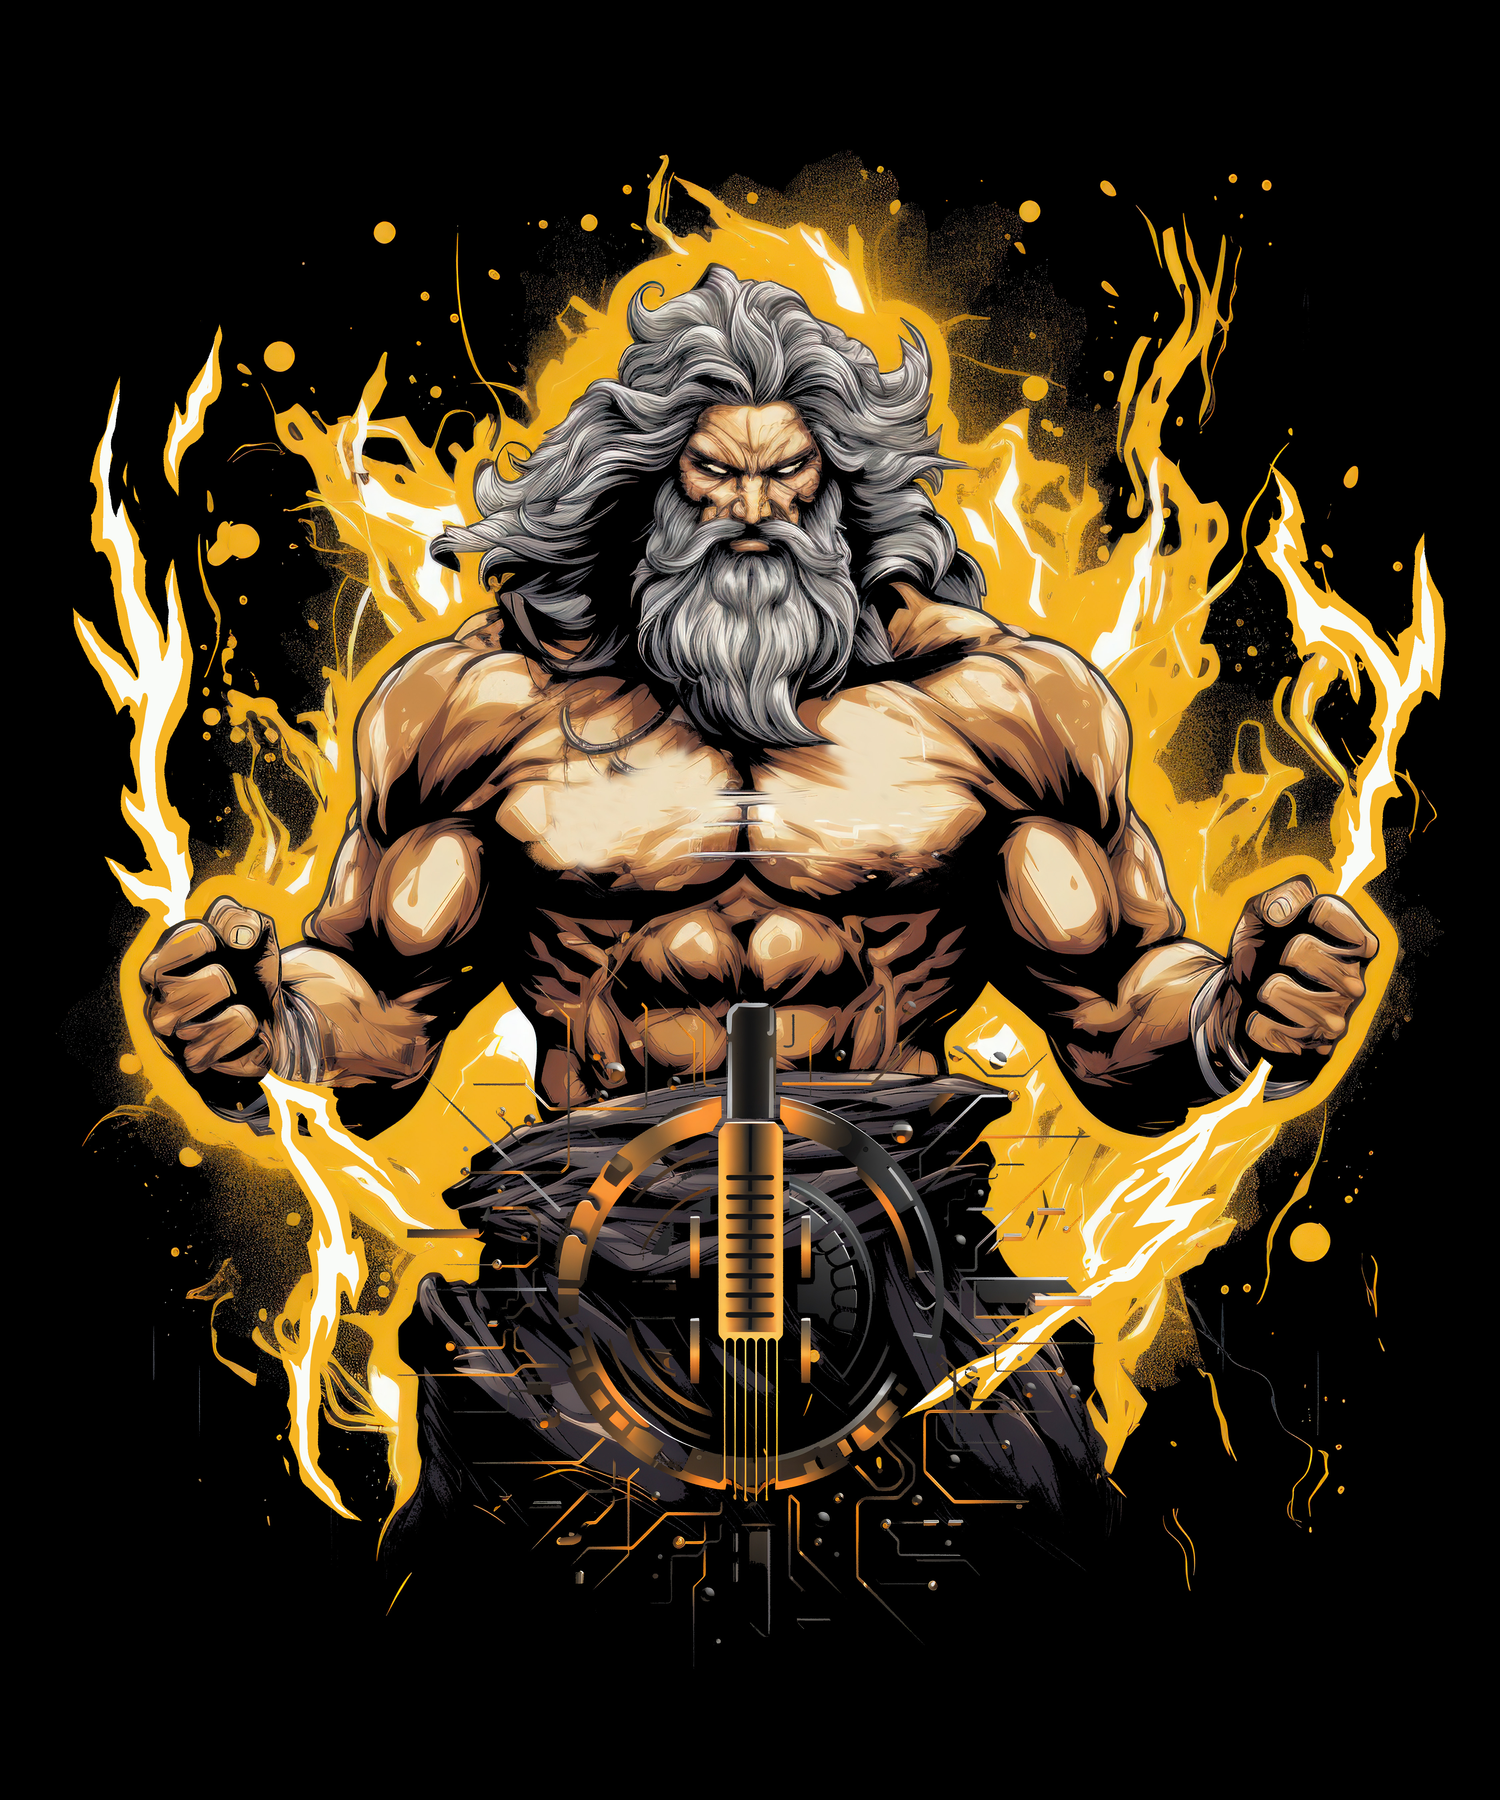 Zeus T-Shirt